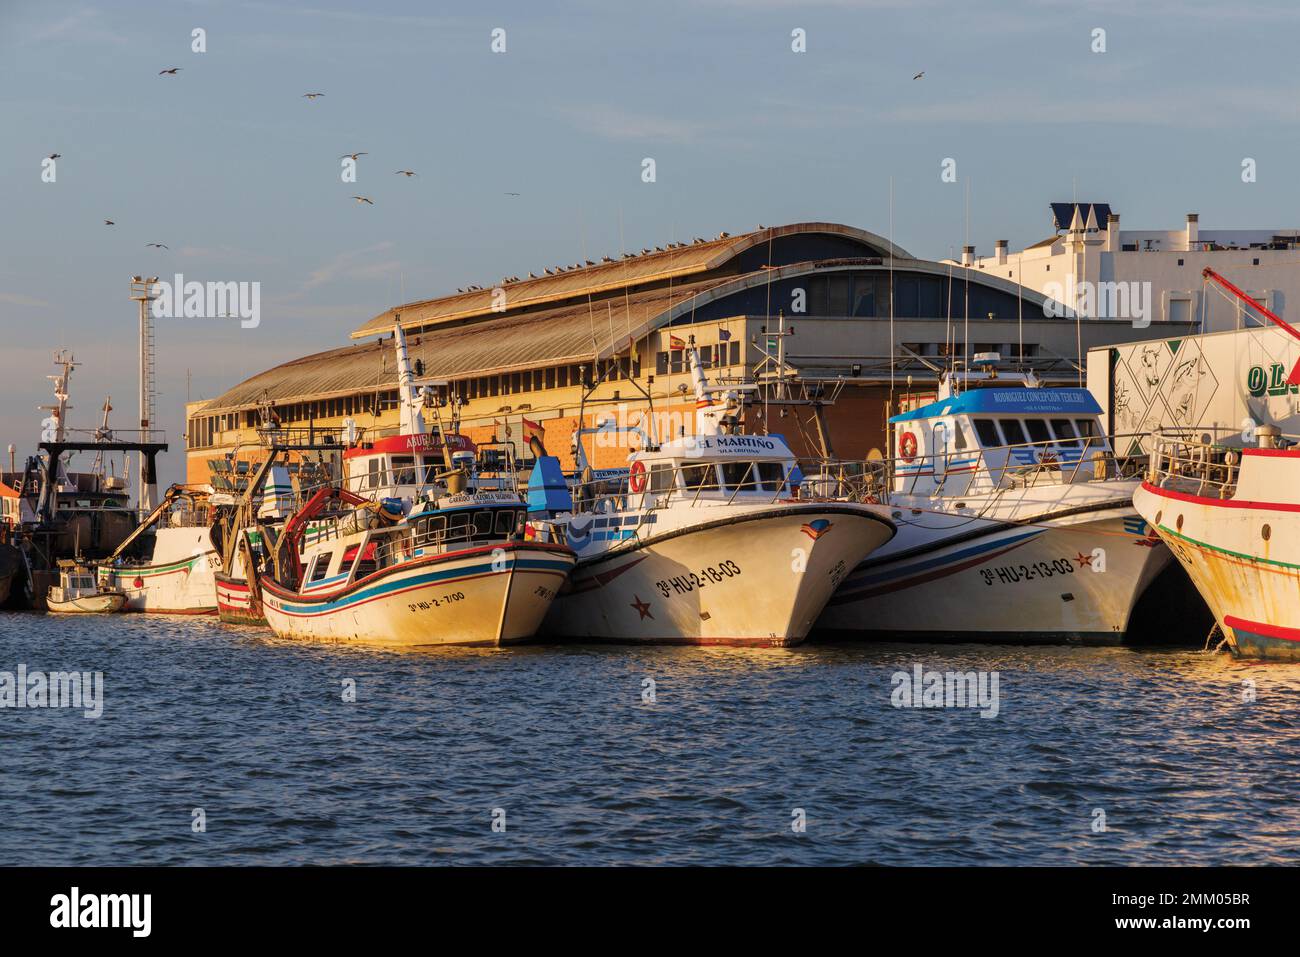 Isla Cristina, Provinz Huelva, Andalusien, Südspanien. Fischerboote im Hafen. Isla Cristina ist ein großer spanischer Fischereihafen. Stockfoto